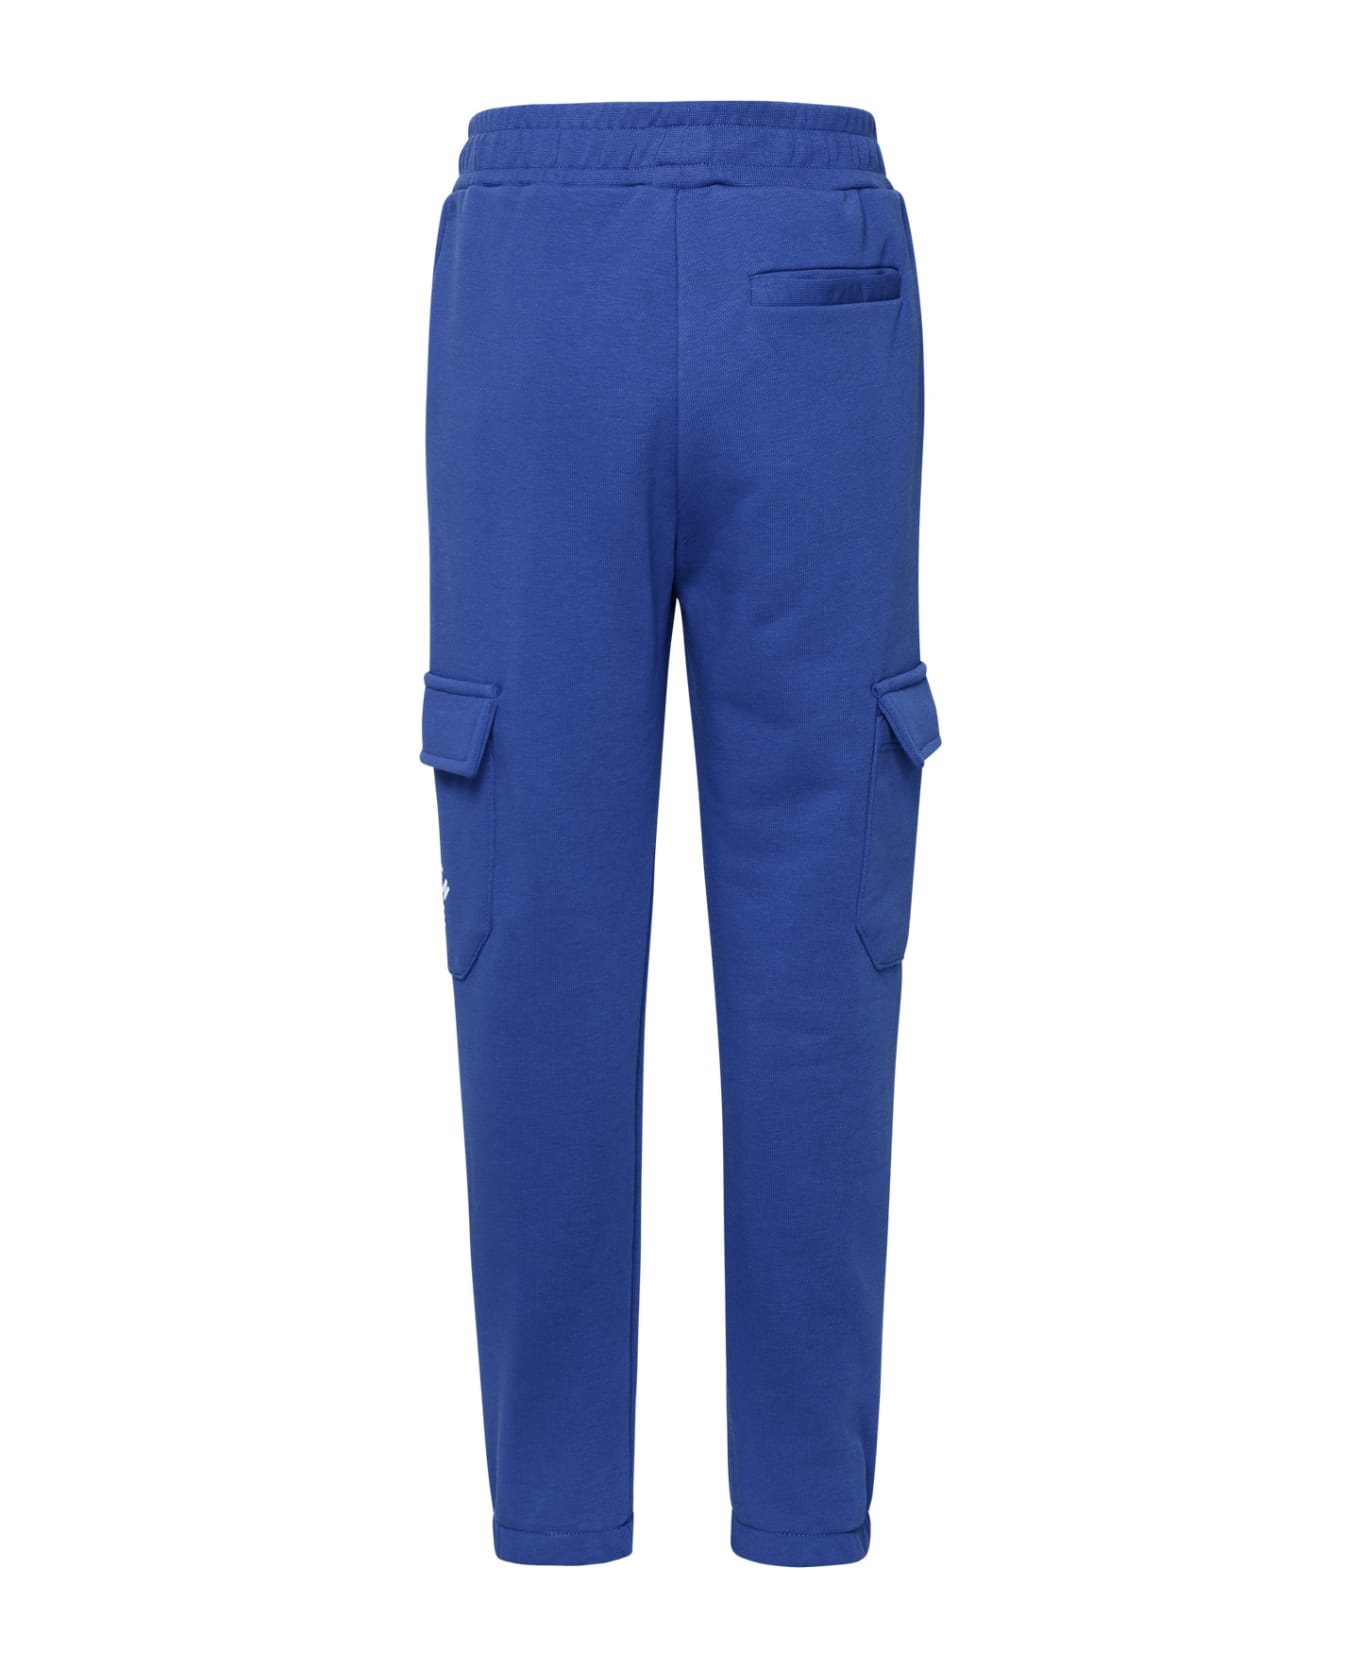 Golden Goose Blue Cotton Pants - Blue